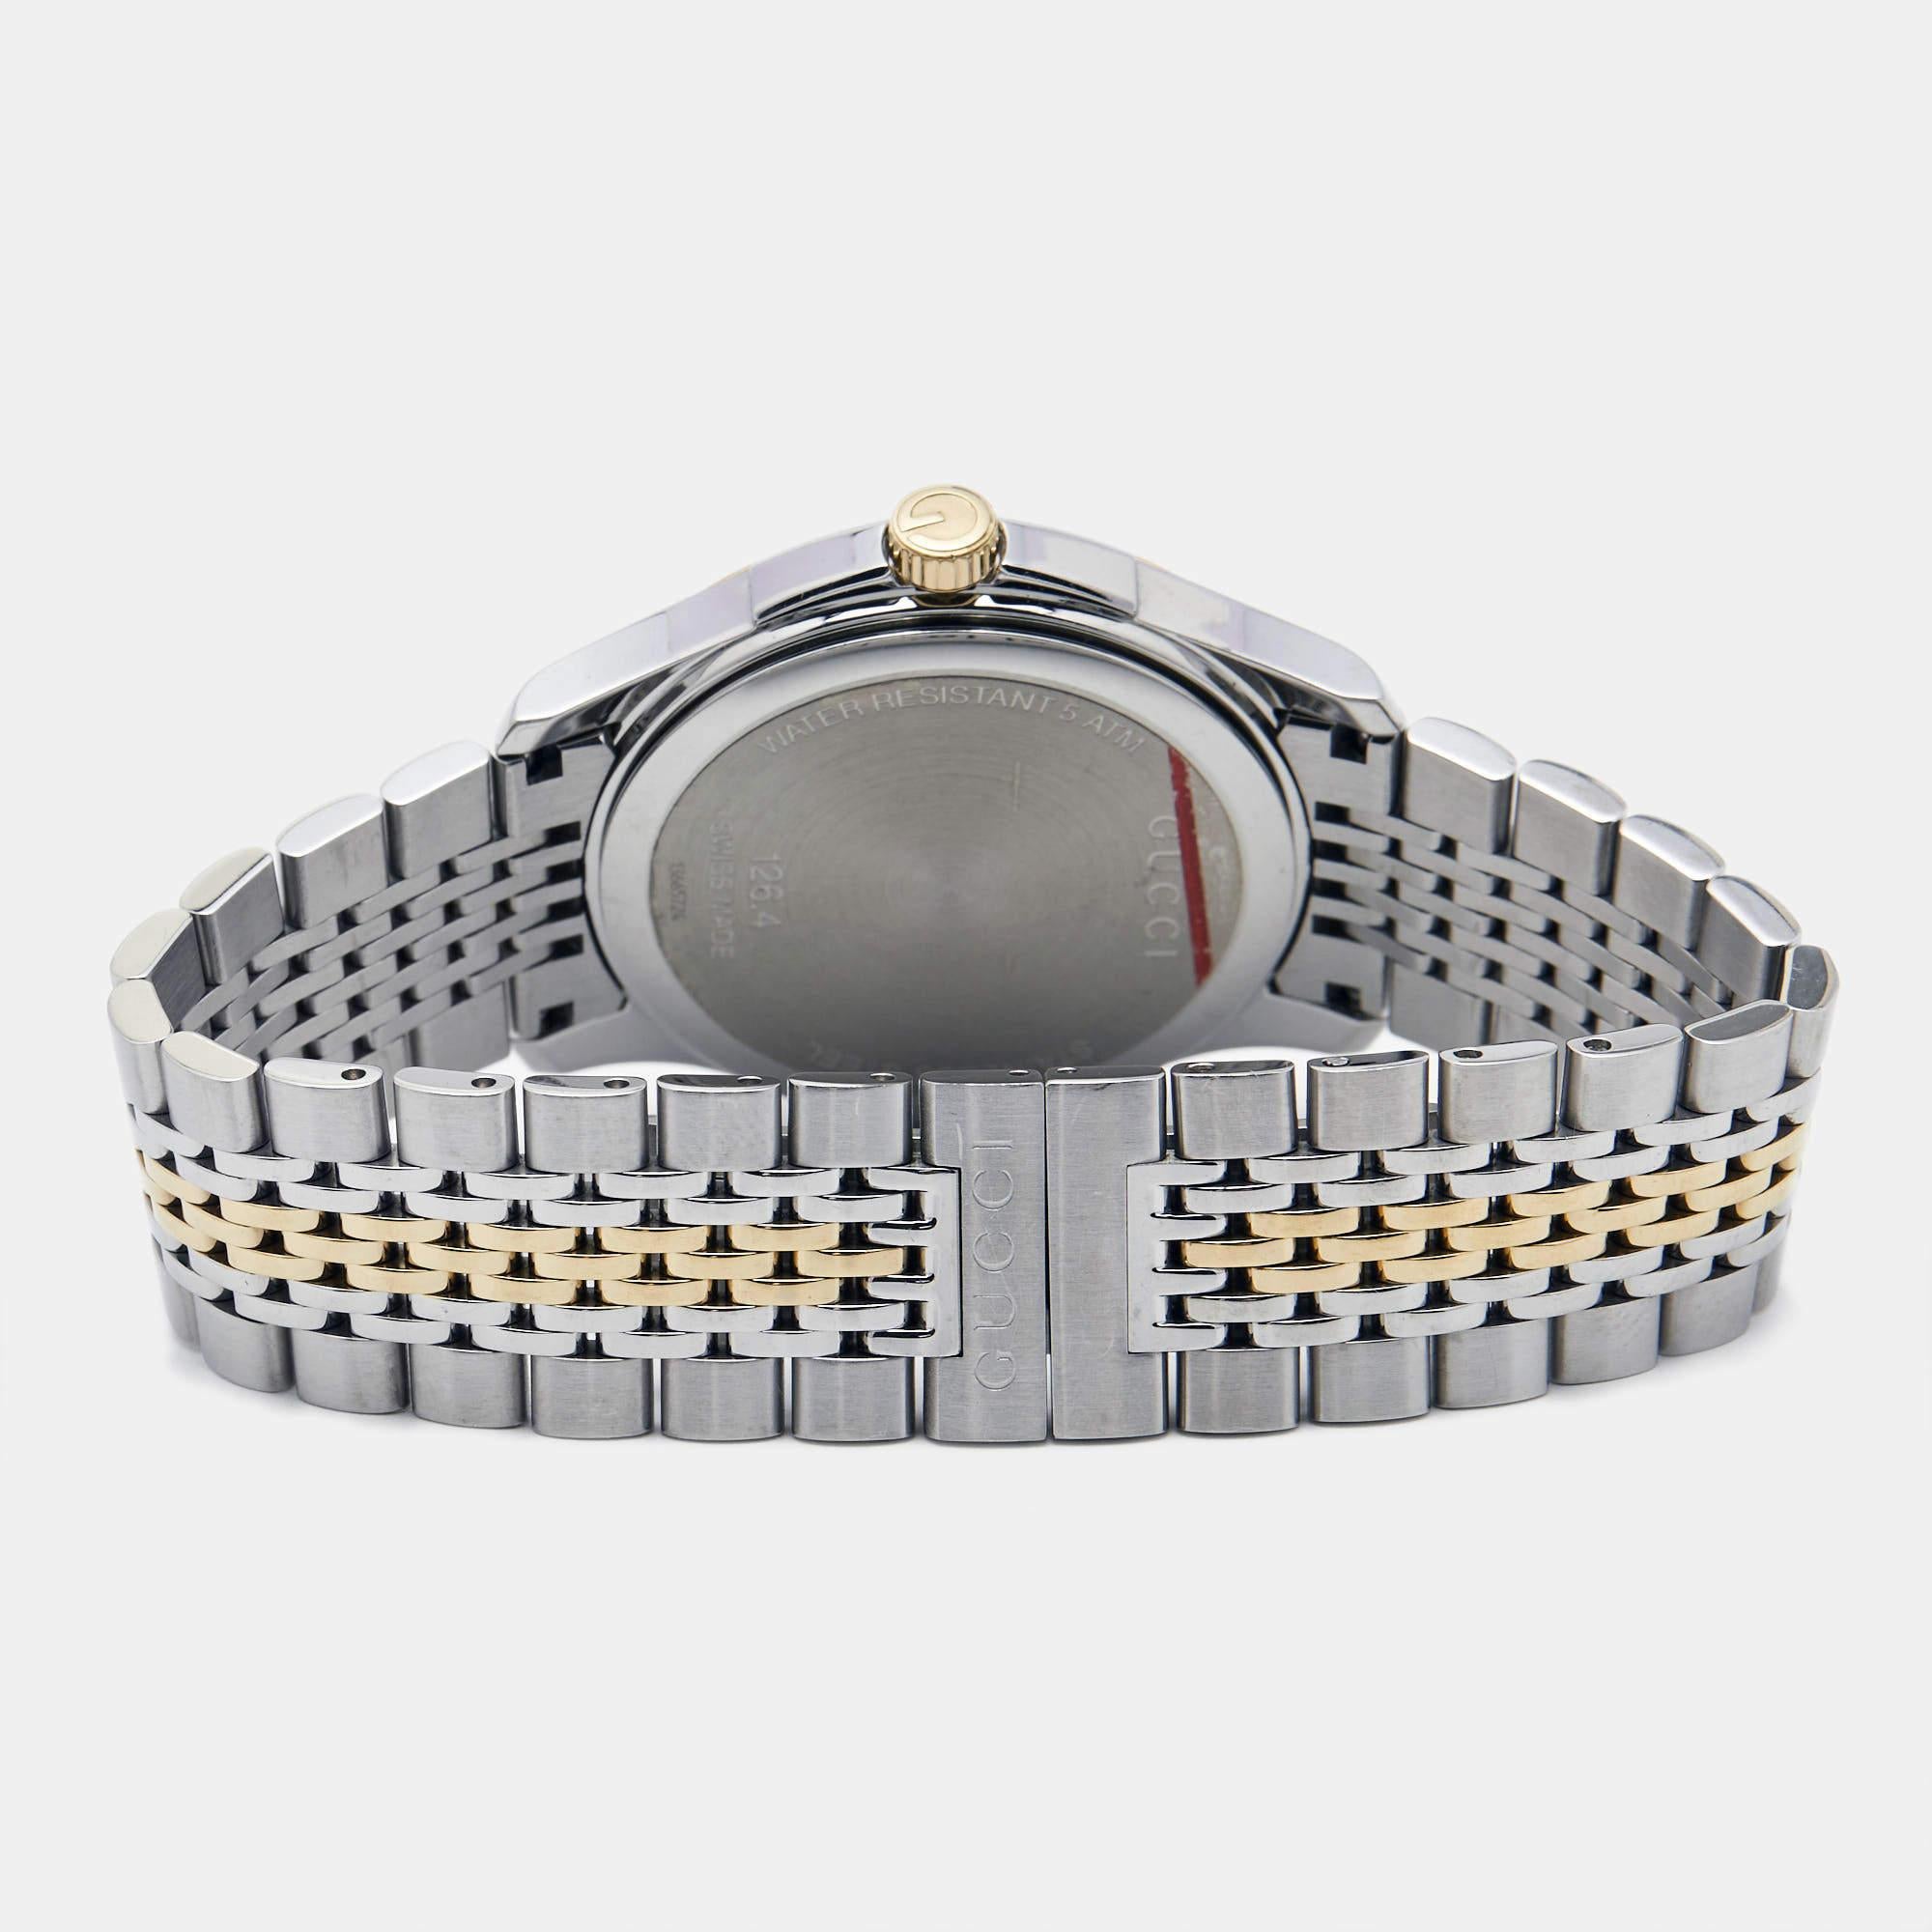 La silhouette intemporelle de cette montre-bracelet Gucci, réalisée dans des matériaux de haute qualité et empreinte de précision et de luxe, est le choix idéal pour une finition sophistiquée de tout look. Il s'agit d'une création grandiose destinée